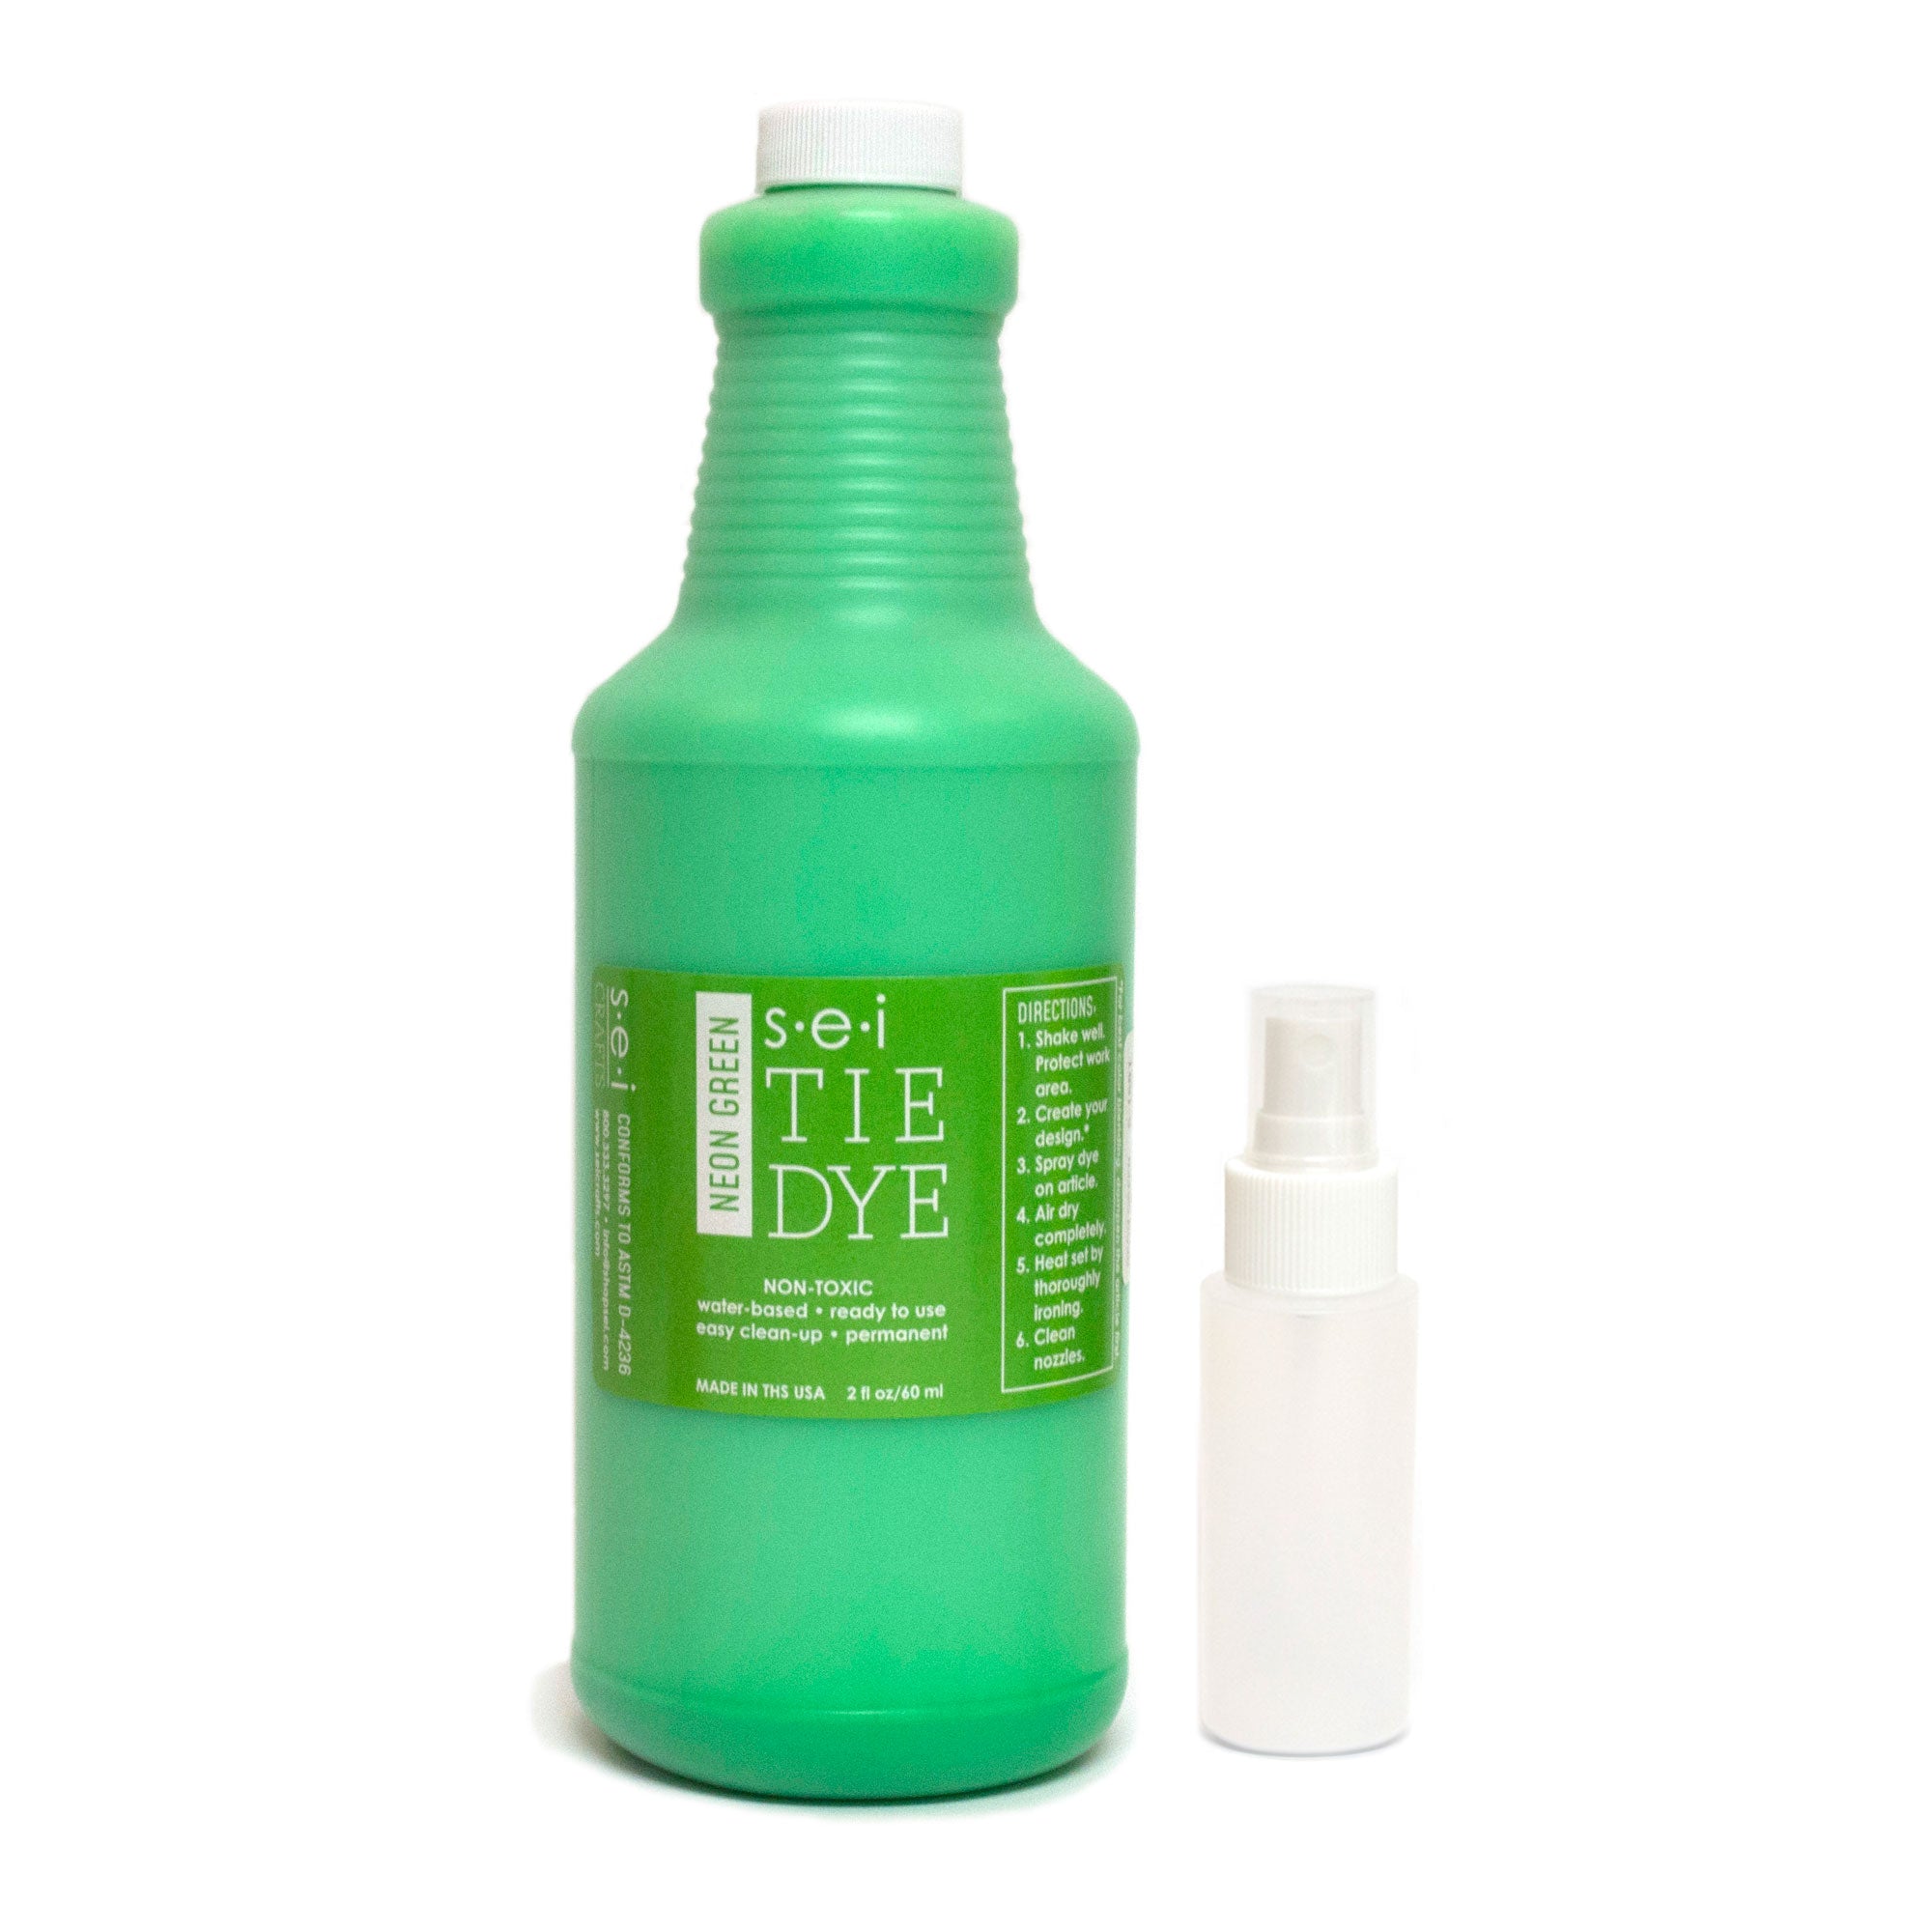 FUN Green Neon Soap Dye (1 oz.)